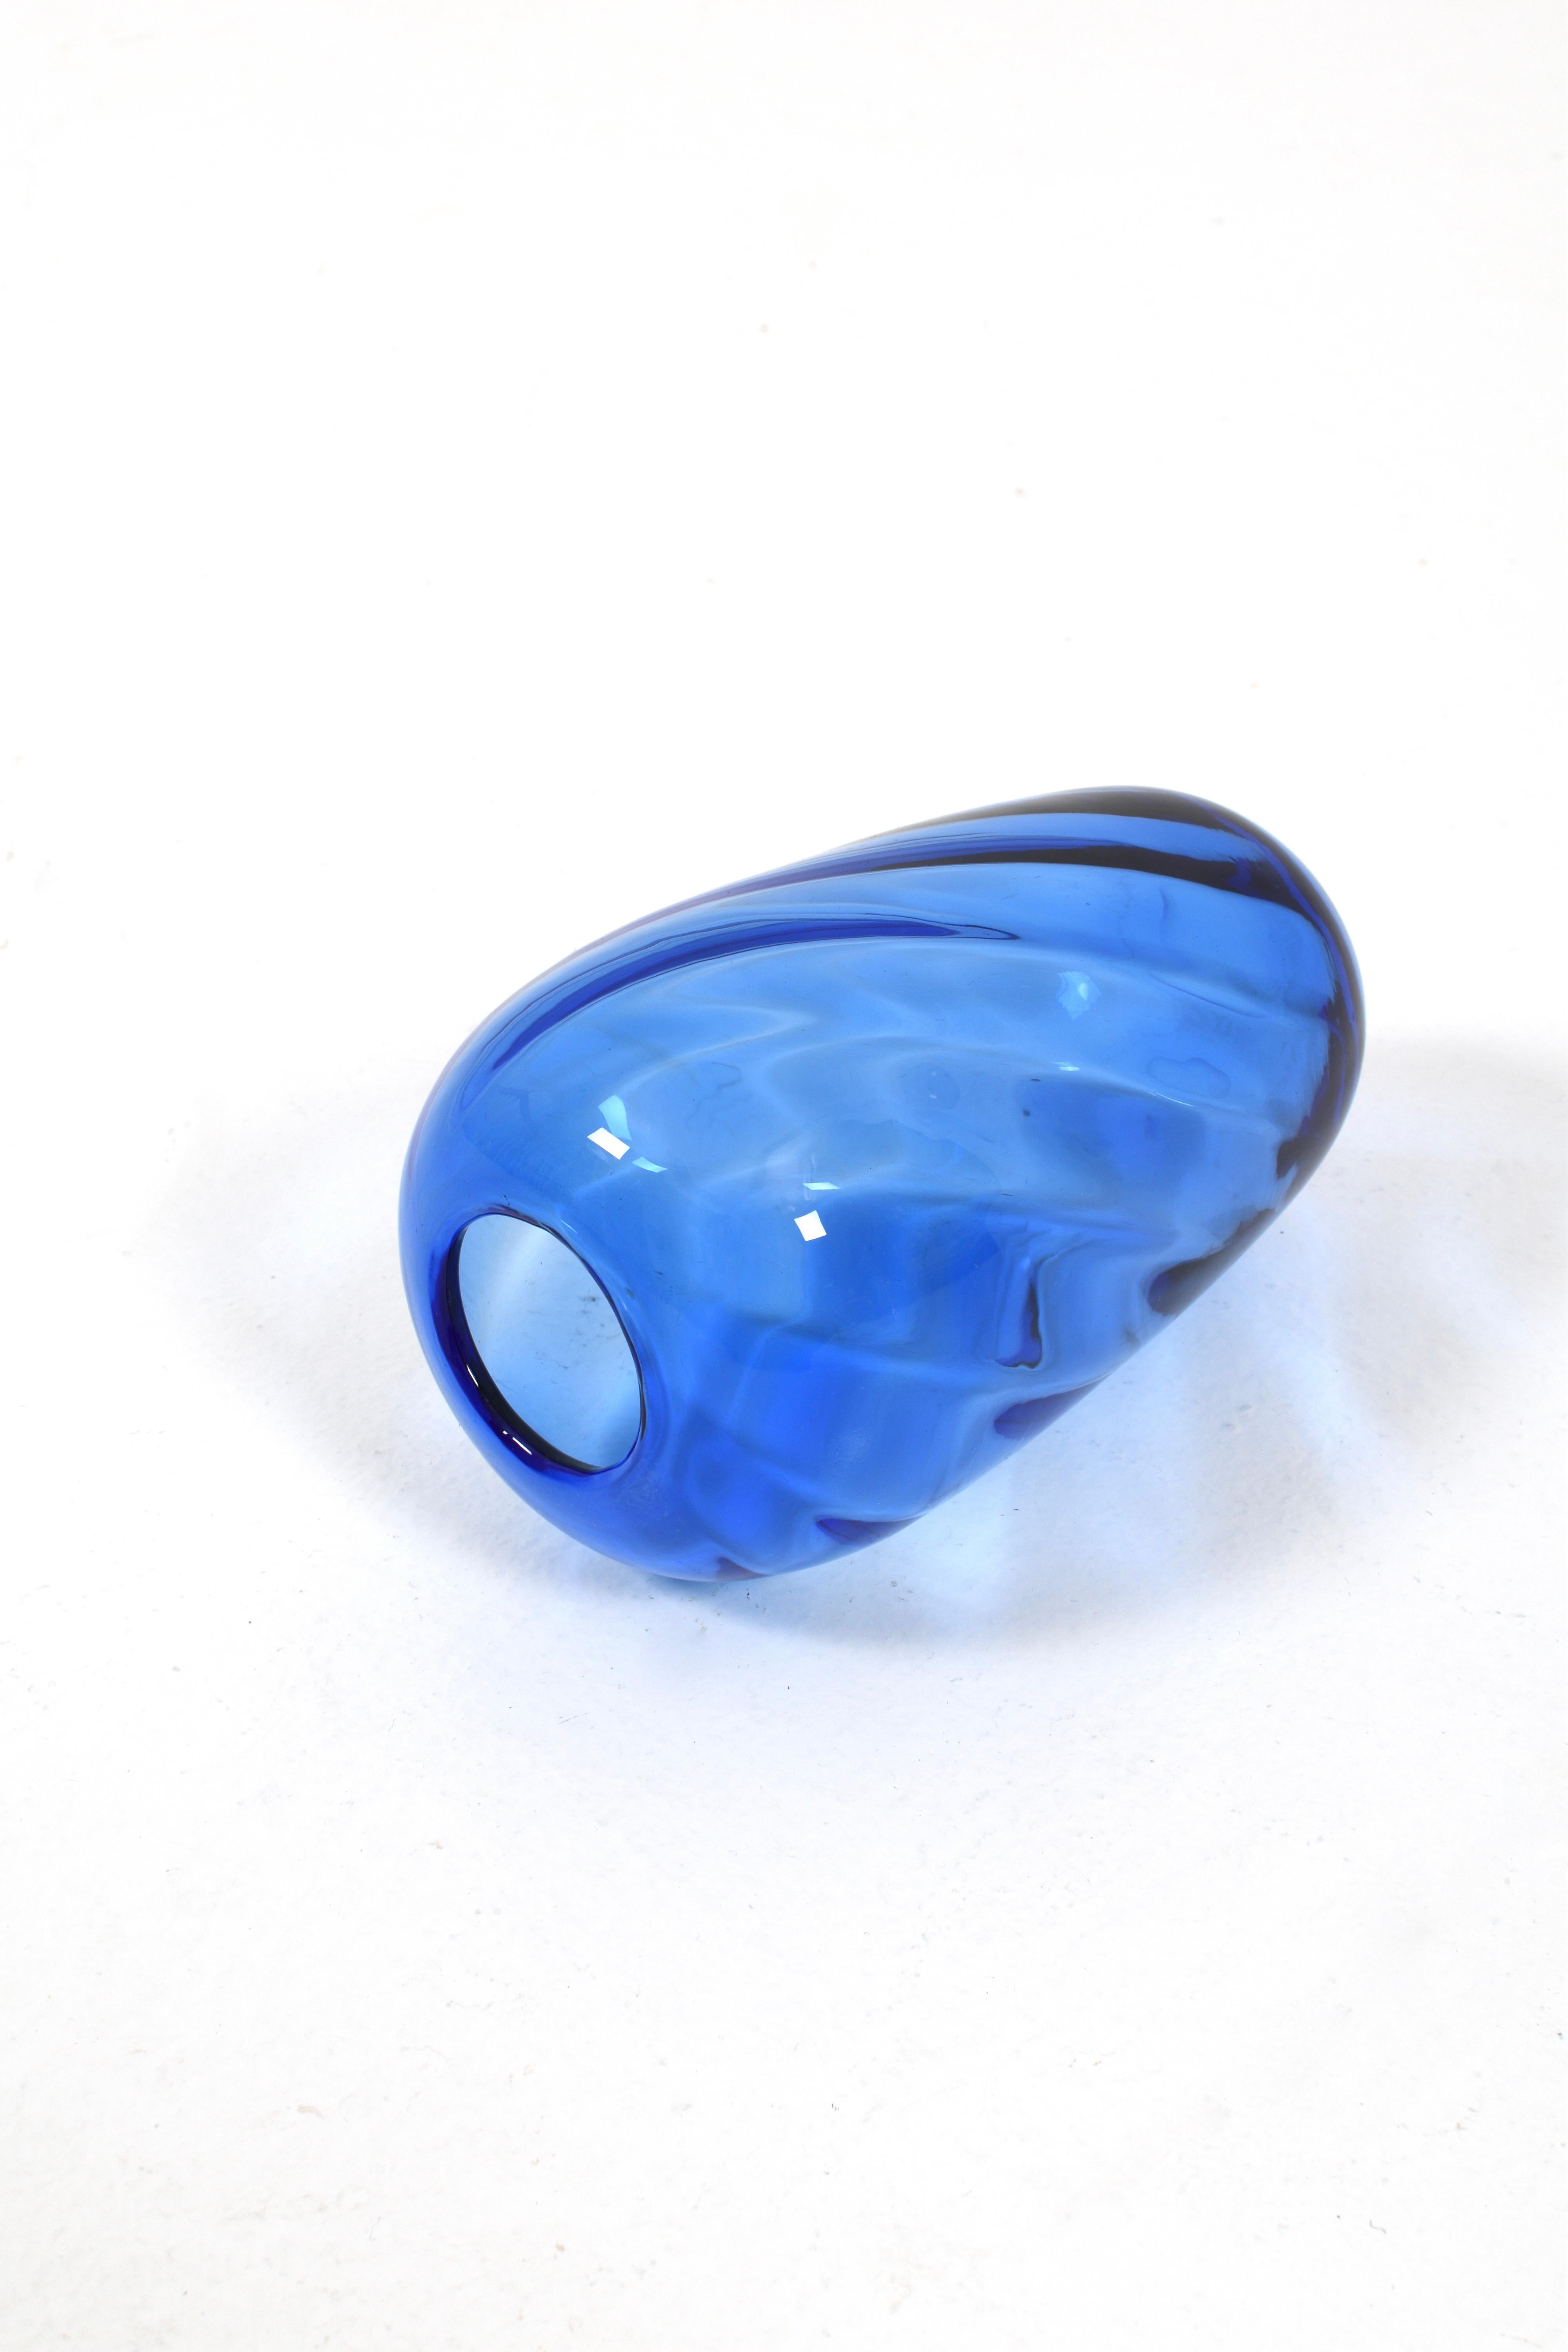 Le vase en verre bleu de Reijmyre Glasbruk est un ornement élégant et intemporel pour votre maison. Ce magnifique vase est fabriqué avec beaucoup d'habileté et d'attention aux détails par les artisans verriers expérimentés de Reijmyre et représente